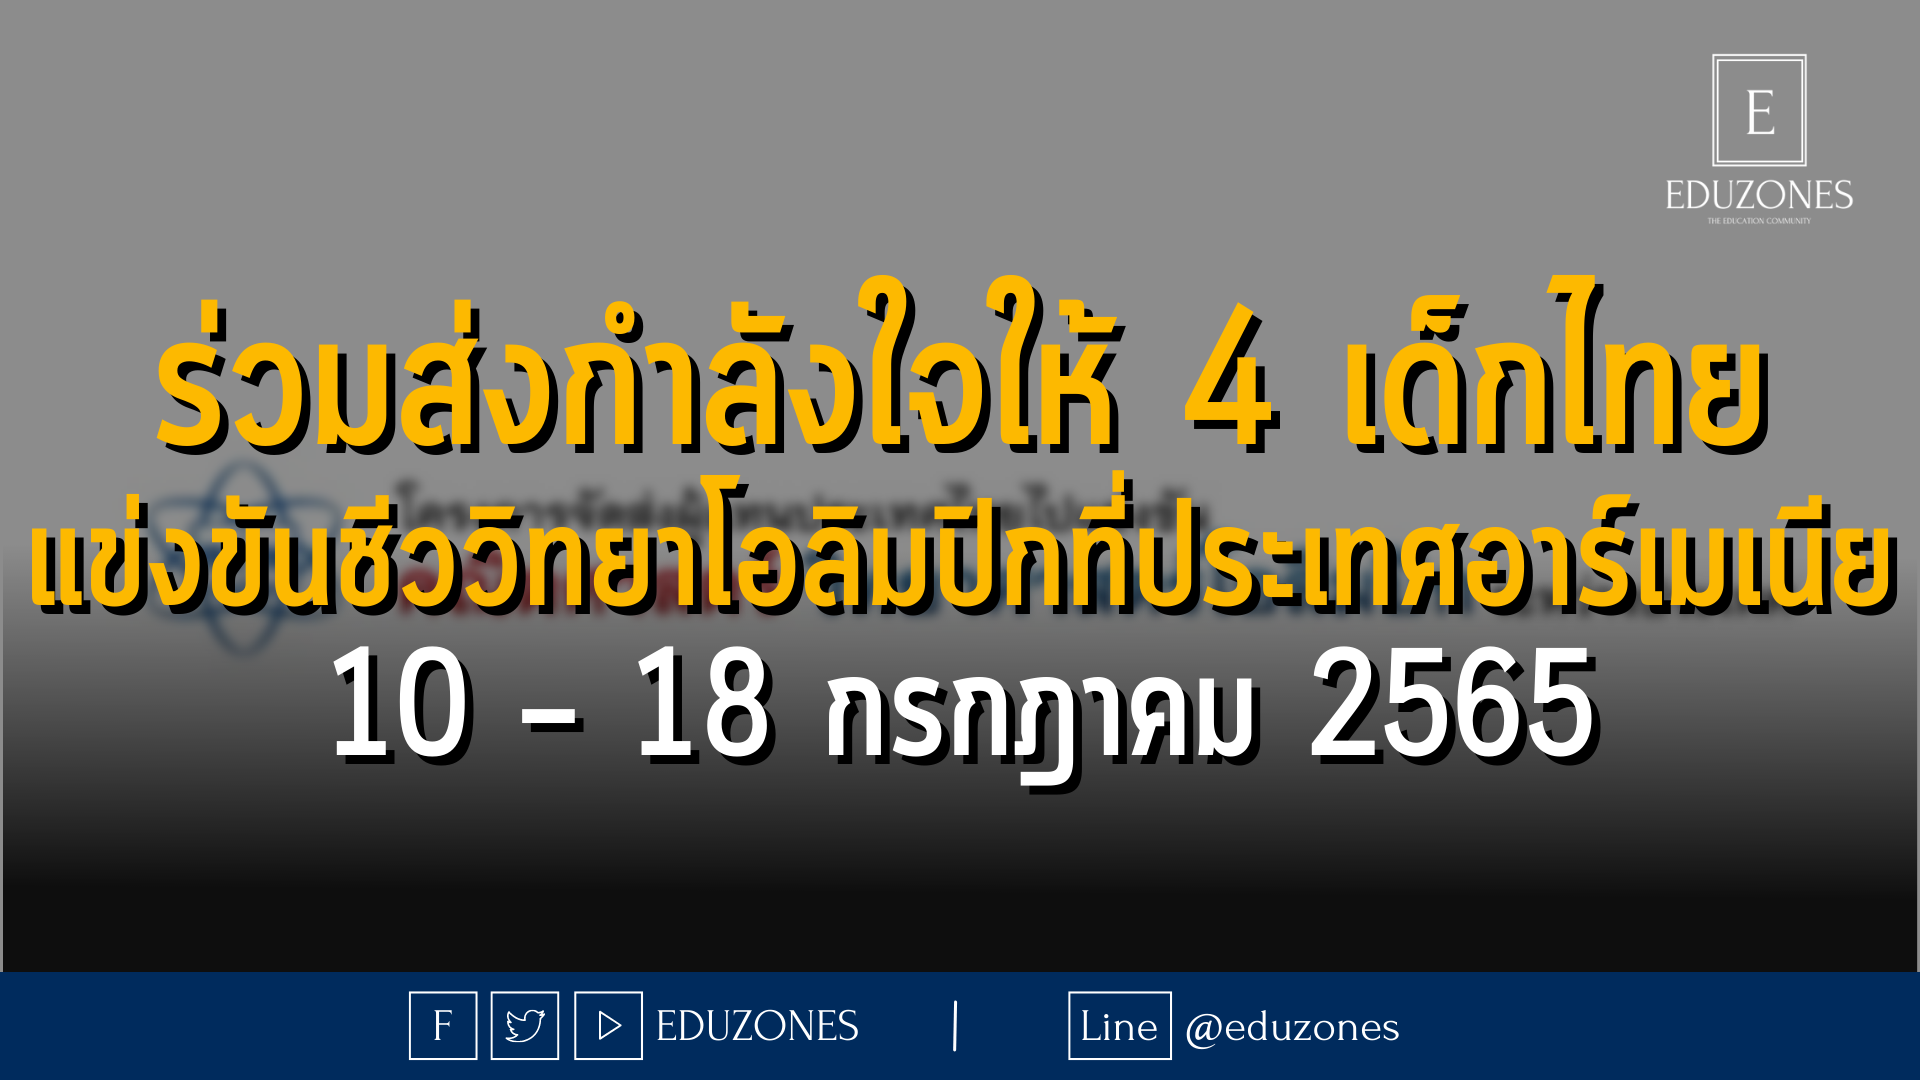 ร่วมส่งกำลังใจให้ 4 เด็กไทย แข่งขันชีววิทยาโอลิมปิกที่ประเทศอาร์เมเนีย 10 – 18 กรกฎาคม 2565